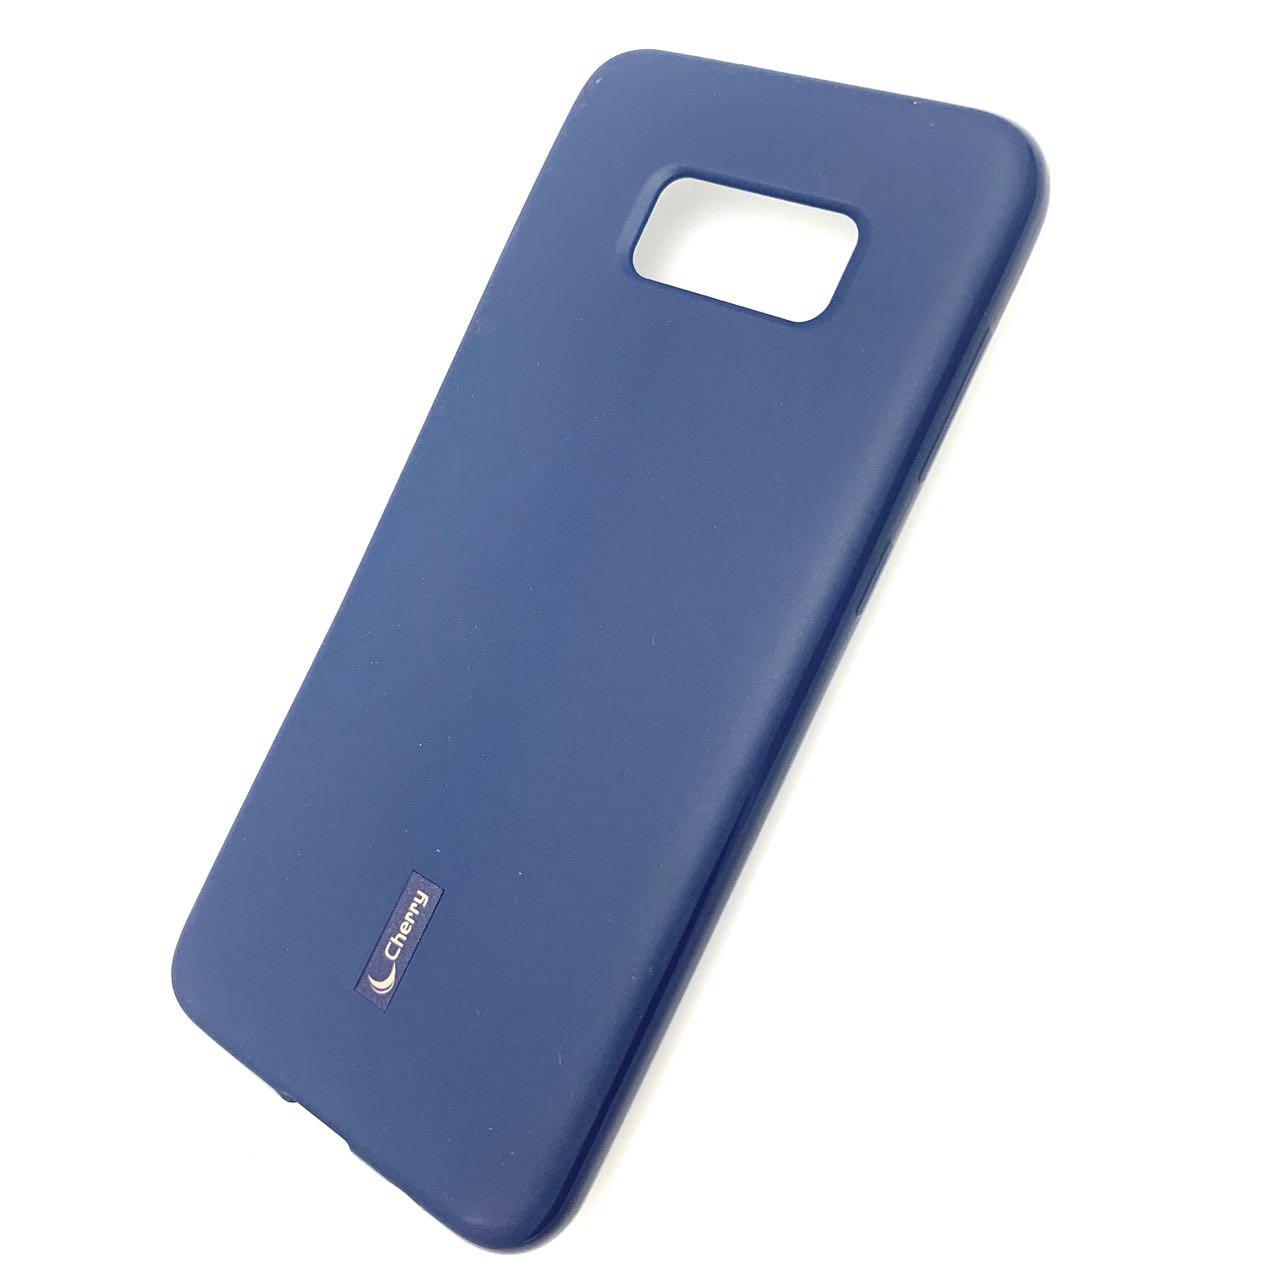 Чехол накладка Cherry для SAMSUNG Galaxy S8 Plus (SM-G955), силикон, цвет синий.